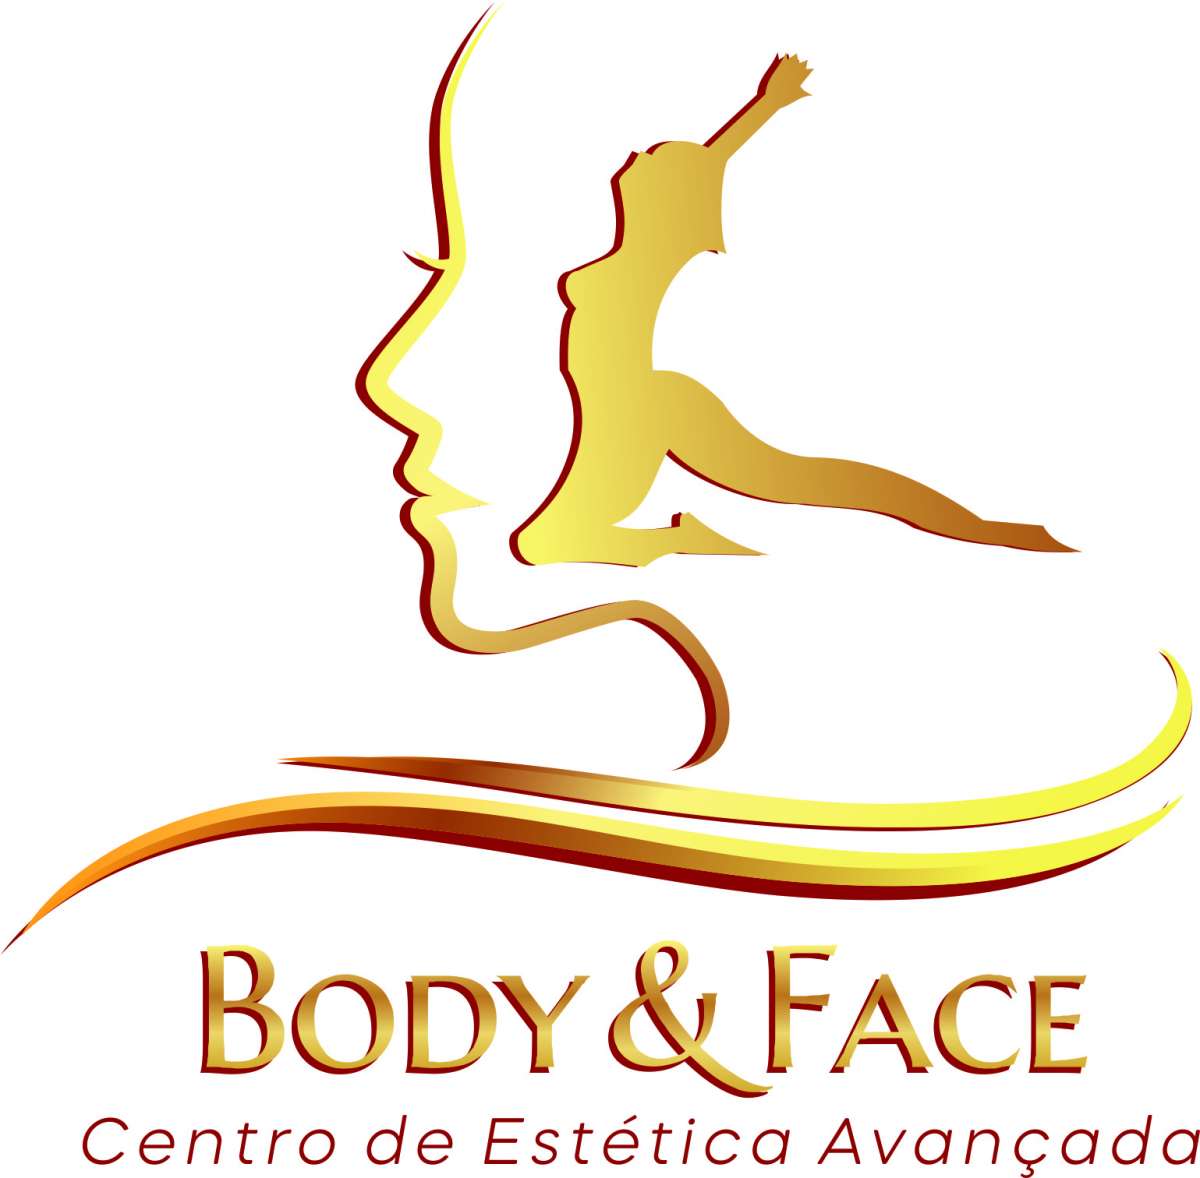 Centro de Estética Avançada Body & Face - Lisboa - Depilação a Laser